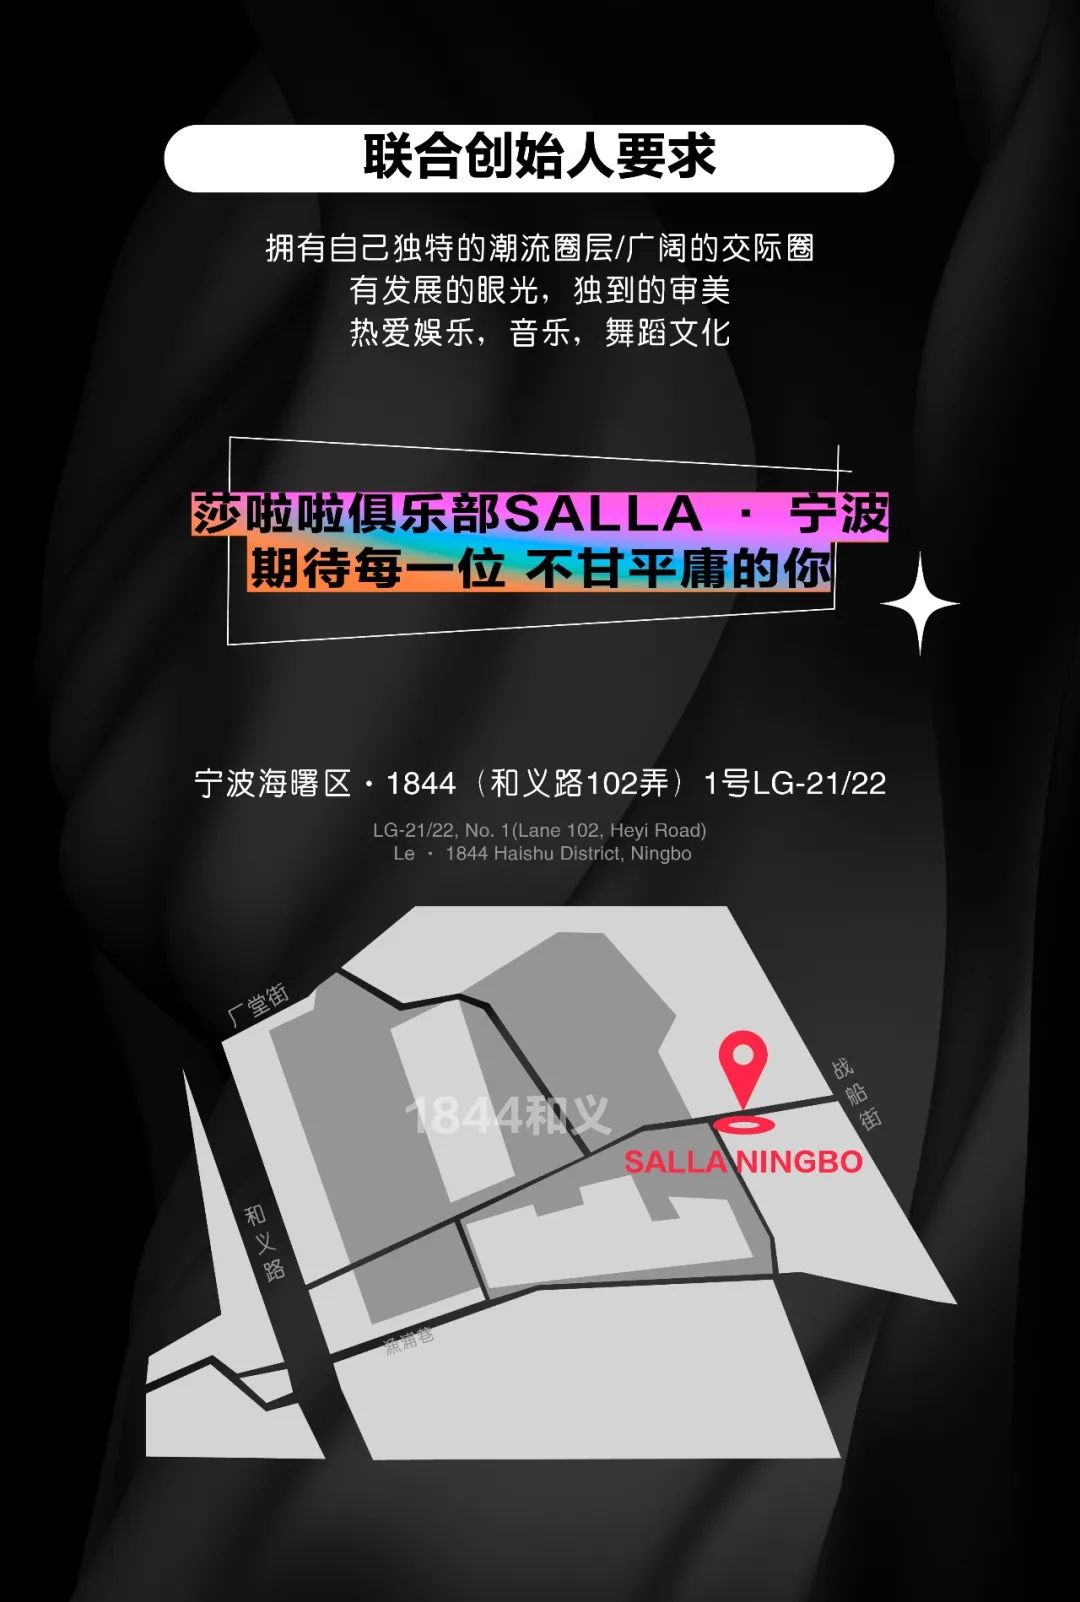 【宁波】莎啦啦·品牌合伙人招募计划-宁波莎啦啦俱乐部/SALLA CLUB